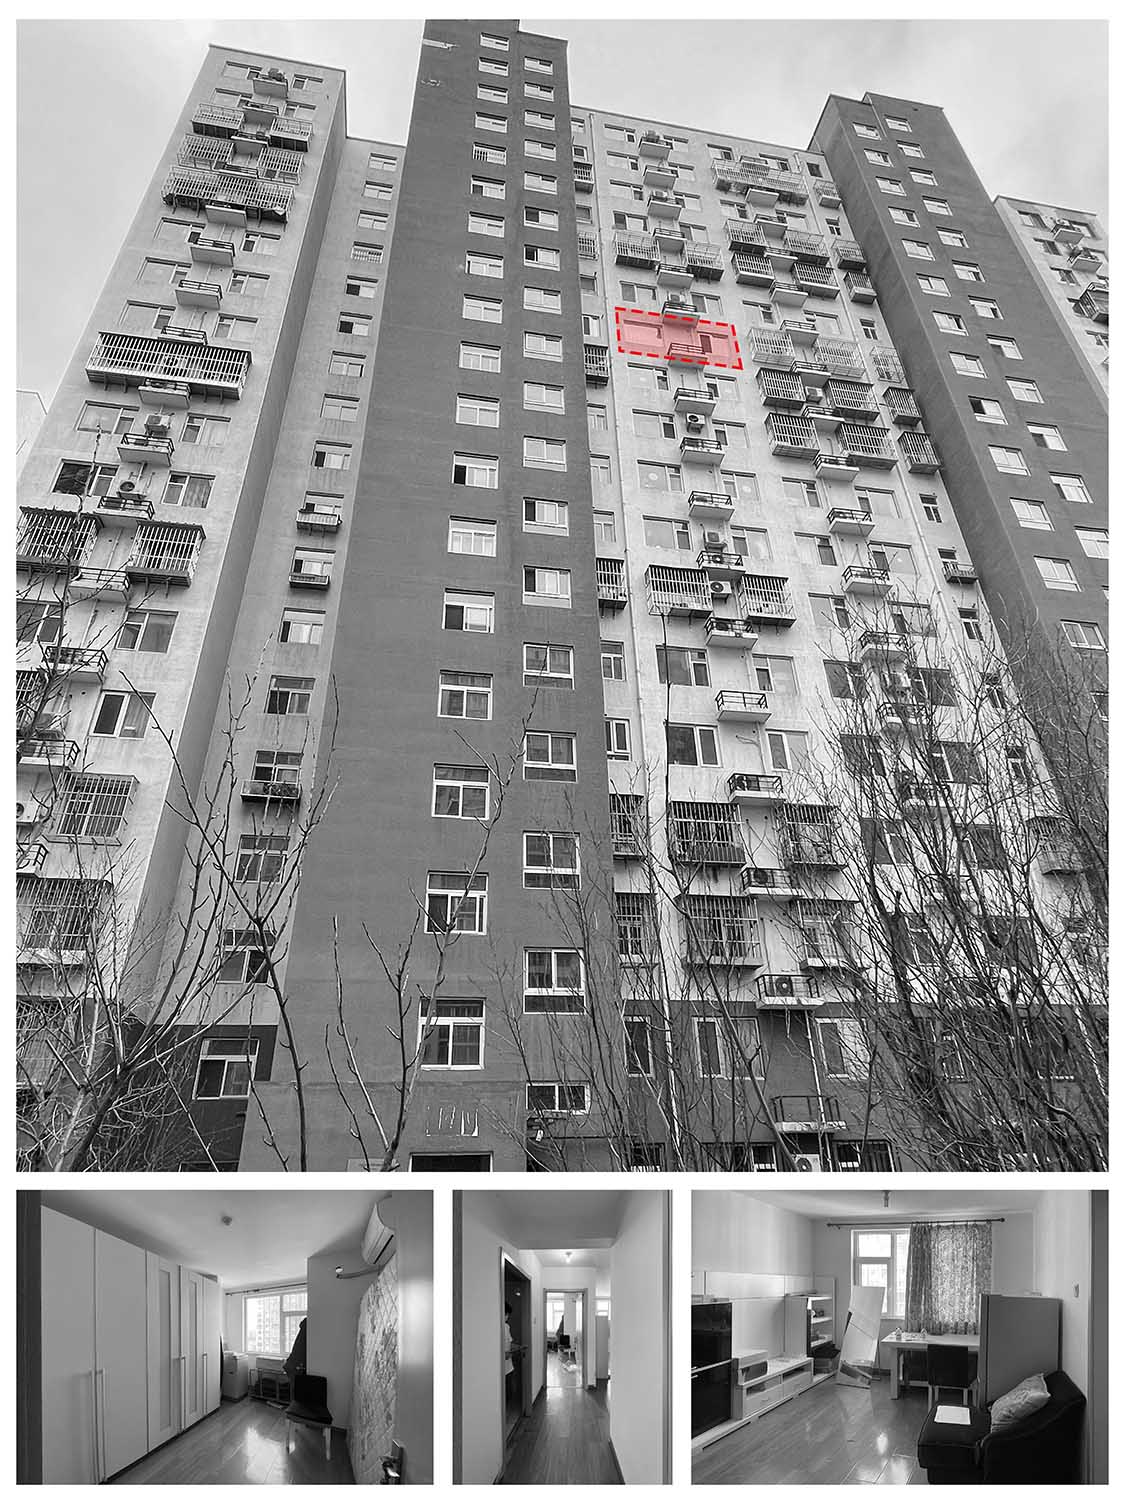 60㎡住宅设计,60㎡,小户型设计,家装设计,北京小户型设计,北京住宅设计,小户型设计案例,住宅设计案例,戏构建筑,戏构建筑设计,戏构建筑设计公司